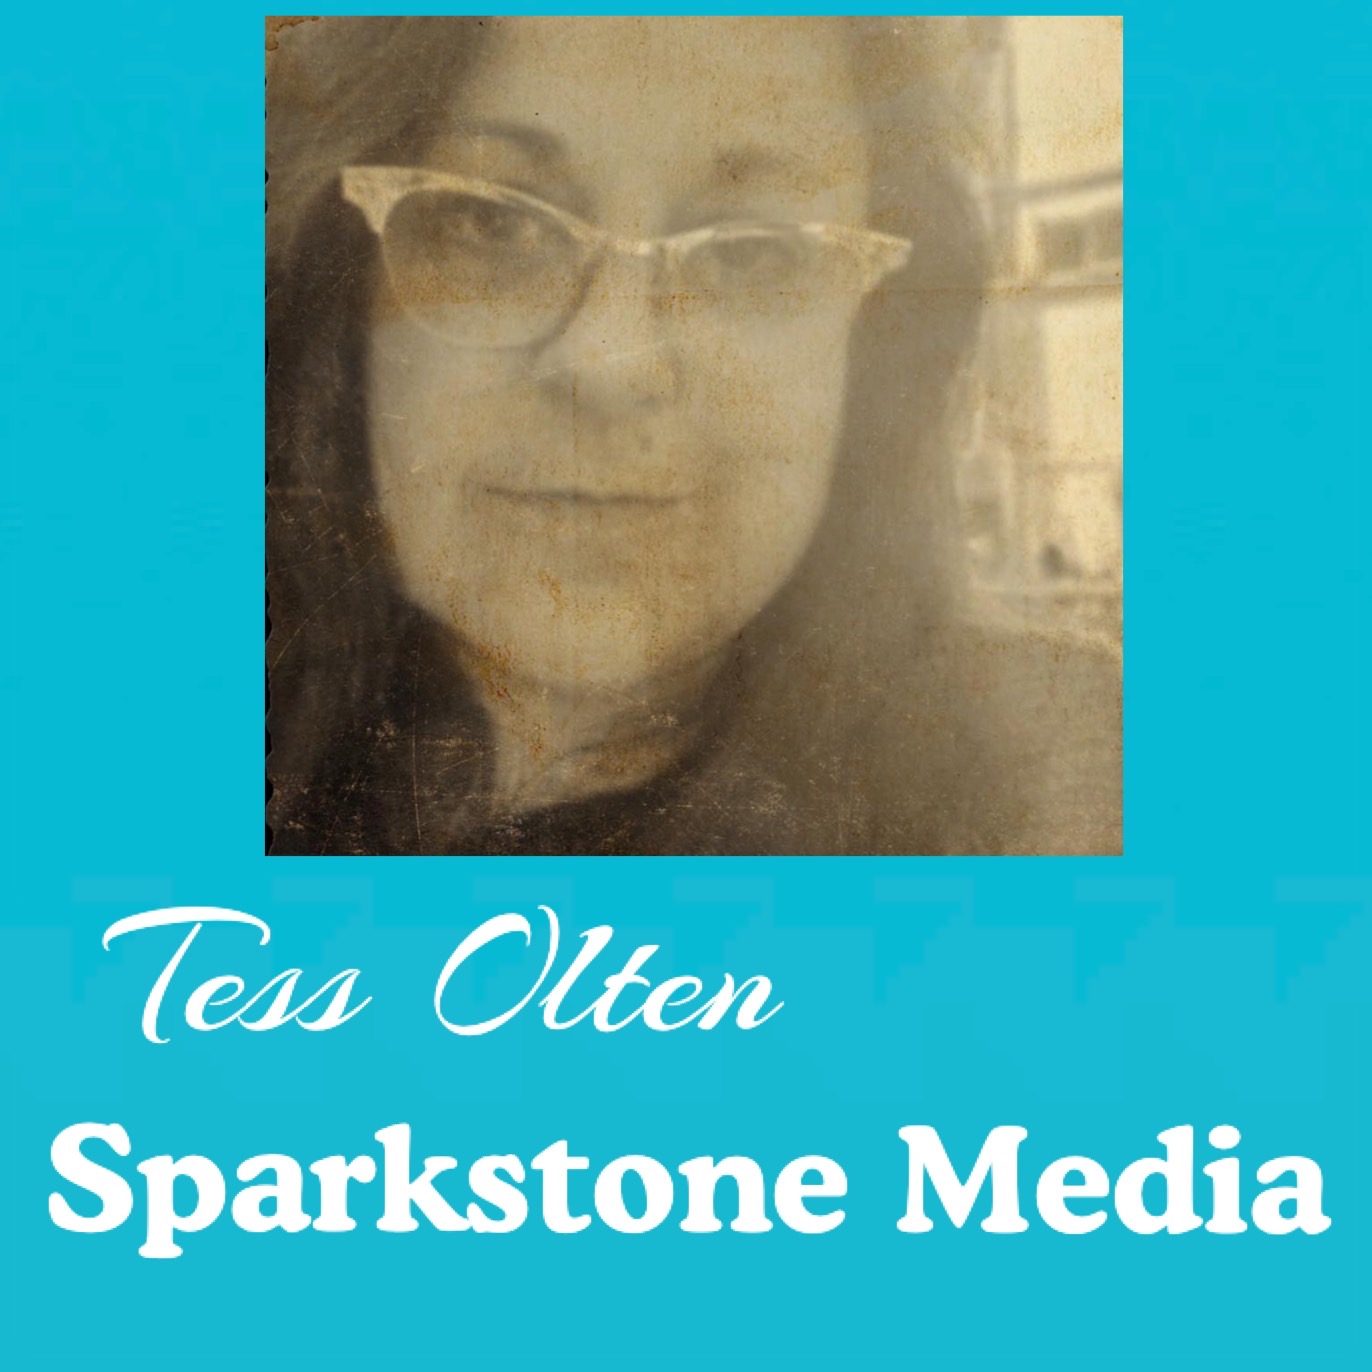 www.SparkstoneMedia.com 